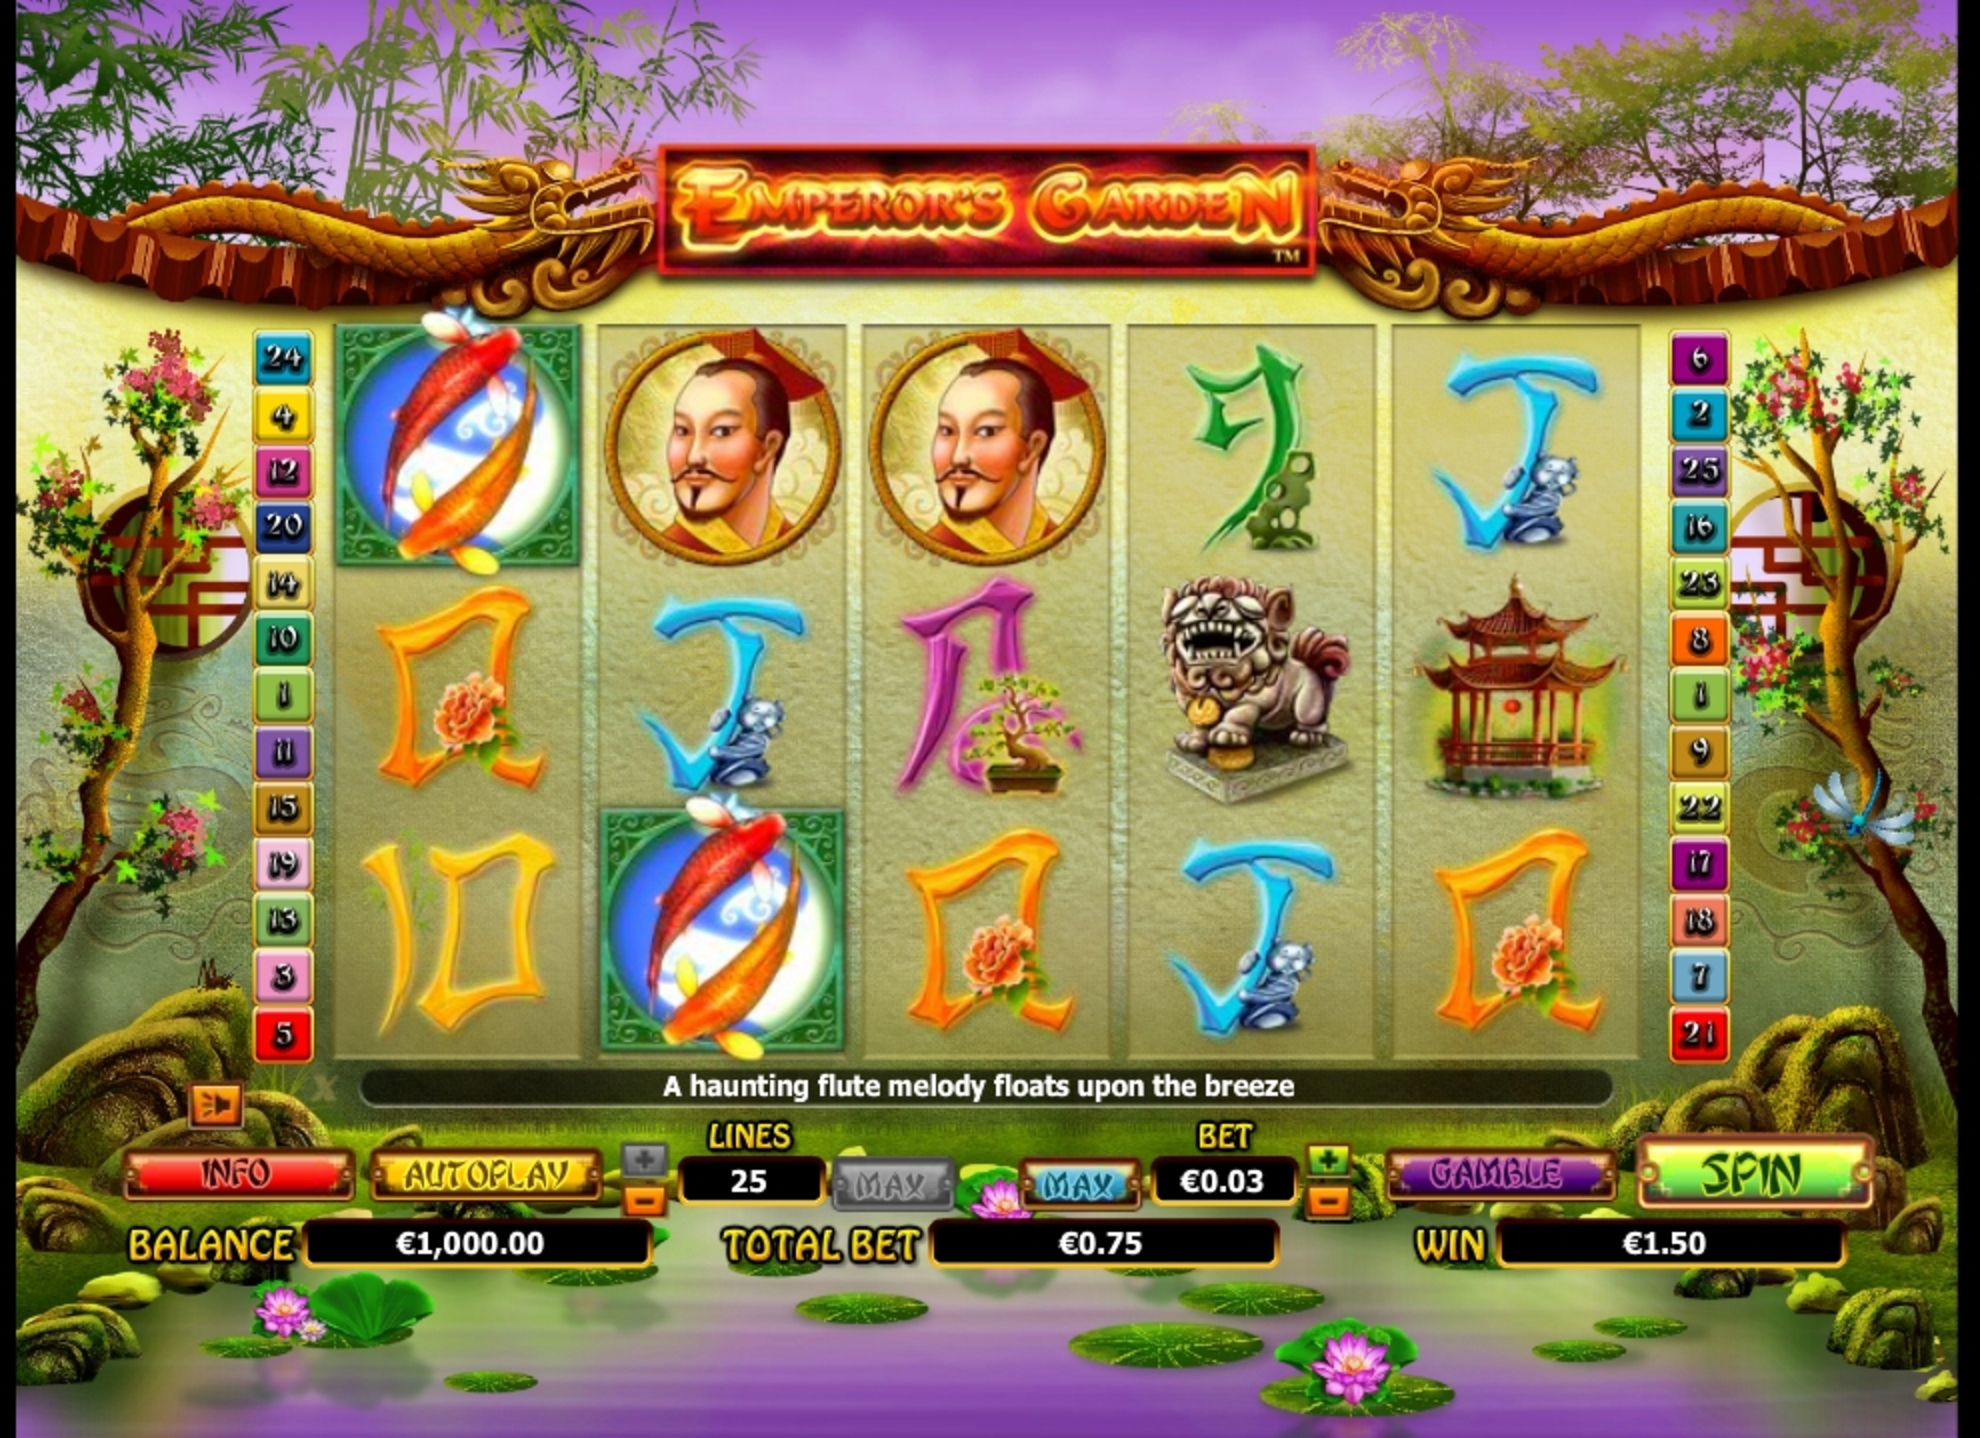 Win Money in Emperor's Garden Free Slot Game by NextGen Gaming